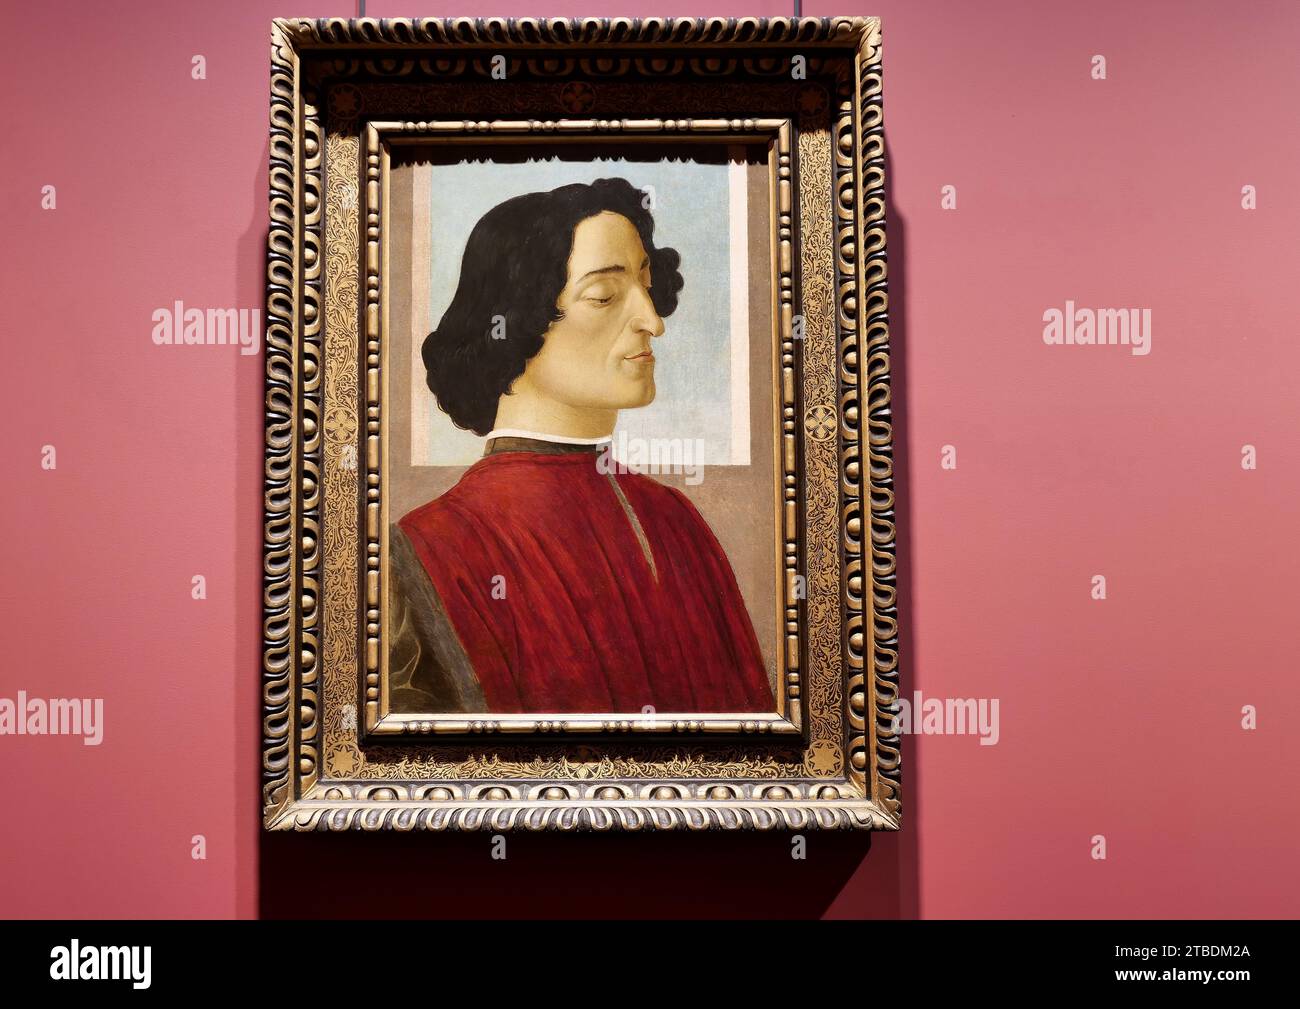 Sandro Botticelli portrait of Giuliano De Medici exhibited at Accademia Carrara in Bergamo, Lombardy, Italy Stock Photo